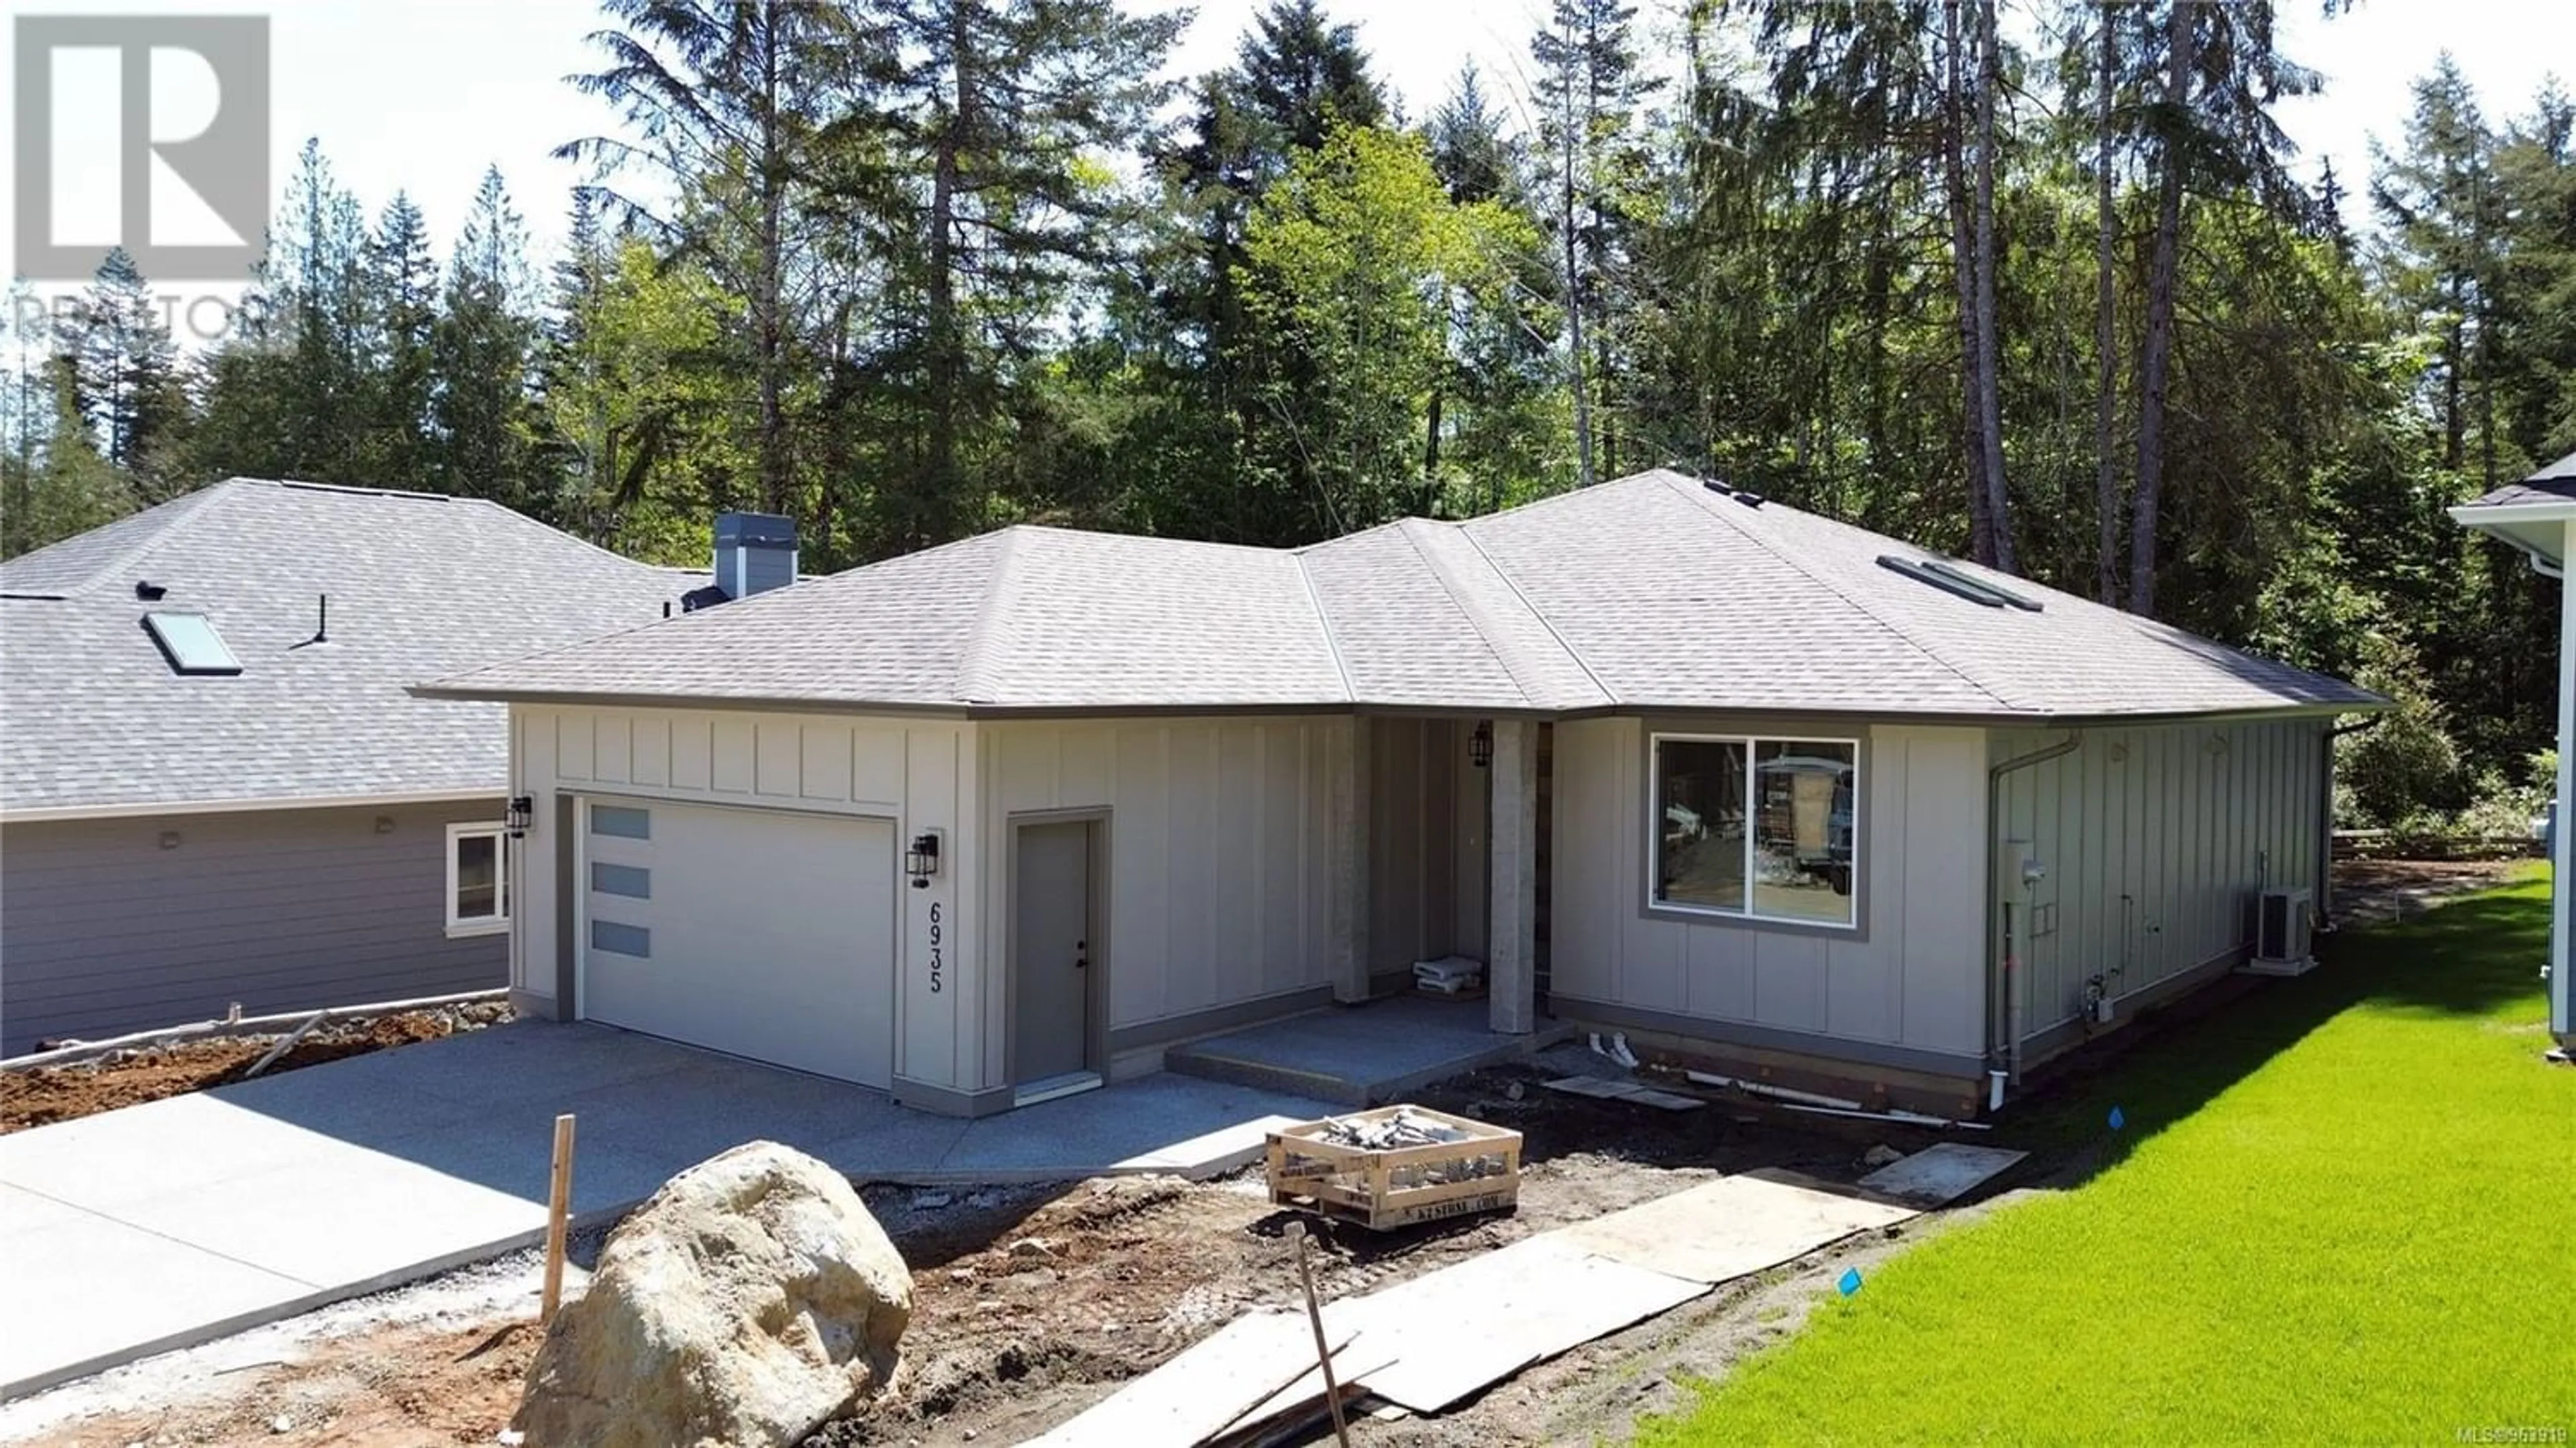 Frontside or backside of a home for 6935 Ridgecrest Rd, Sooke British Columbia V9Z1P9